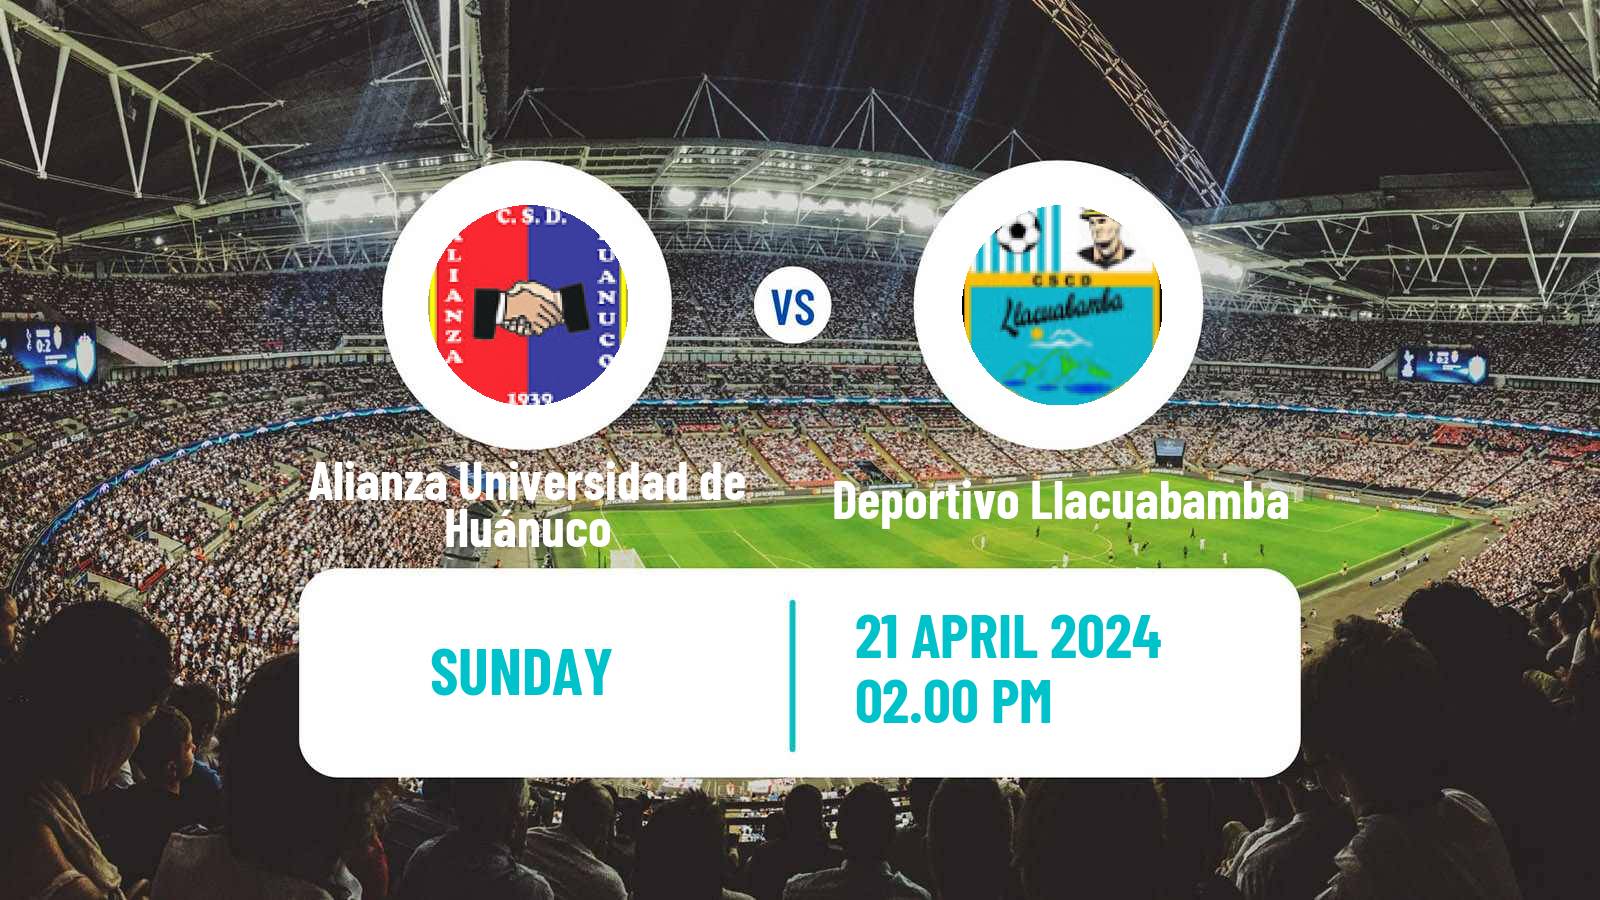 Soccer Peruvian Liga 2 Alianza Universidad de Huánuco - Deportivo Llacuabamba